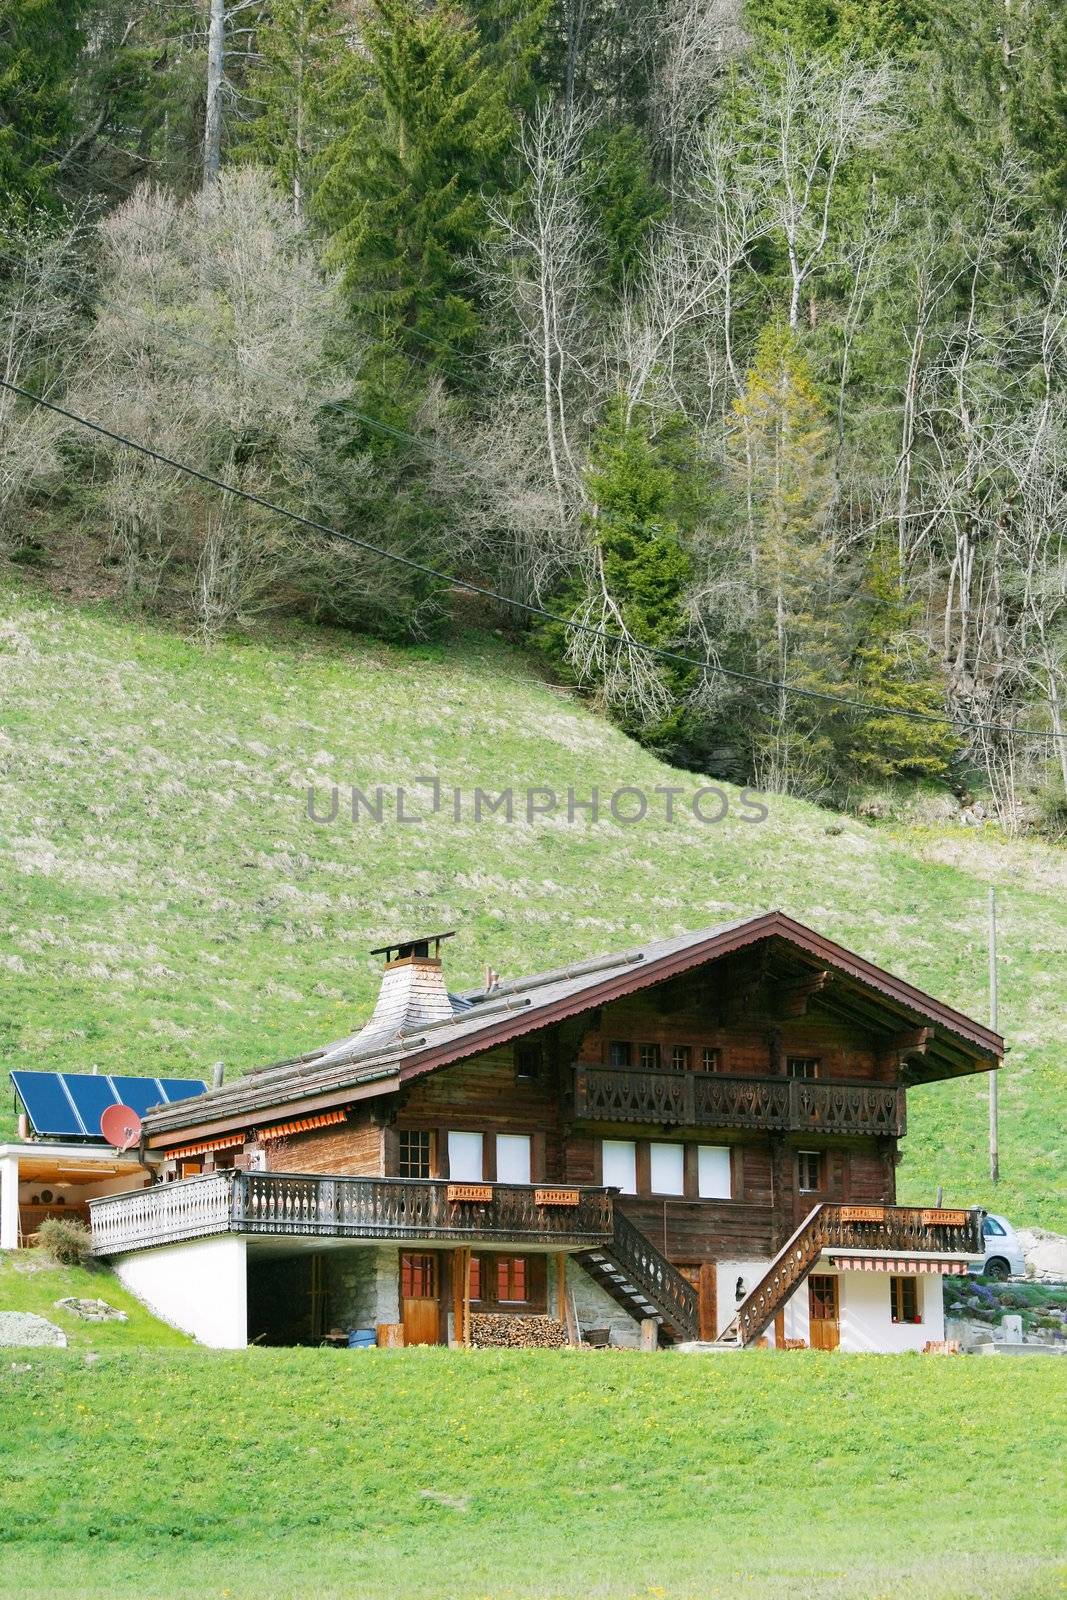 Mountain wooden house in Swiss Alps by dacasdo